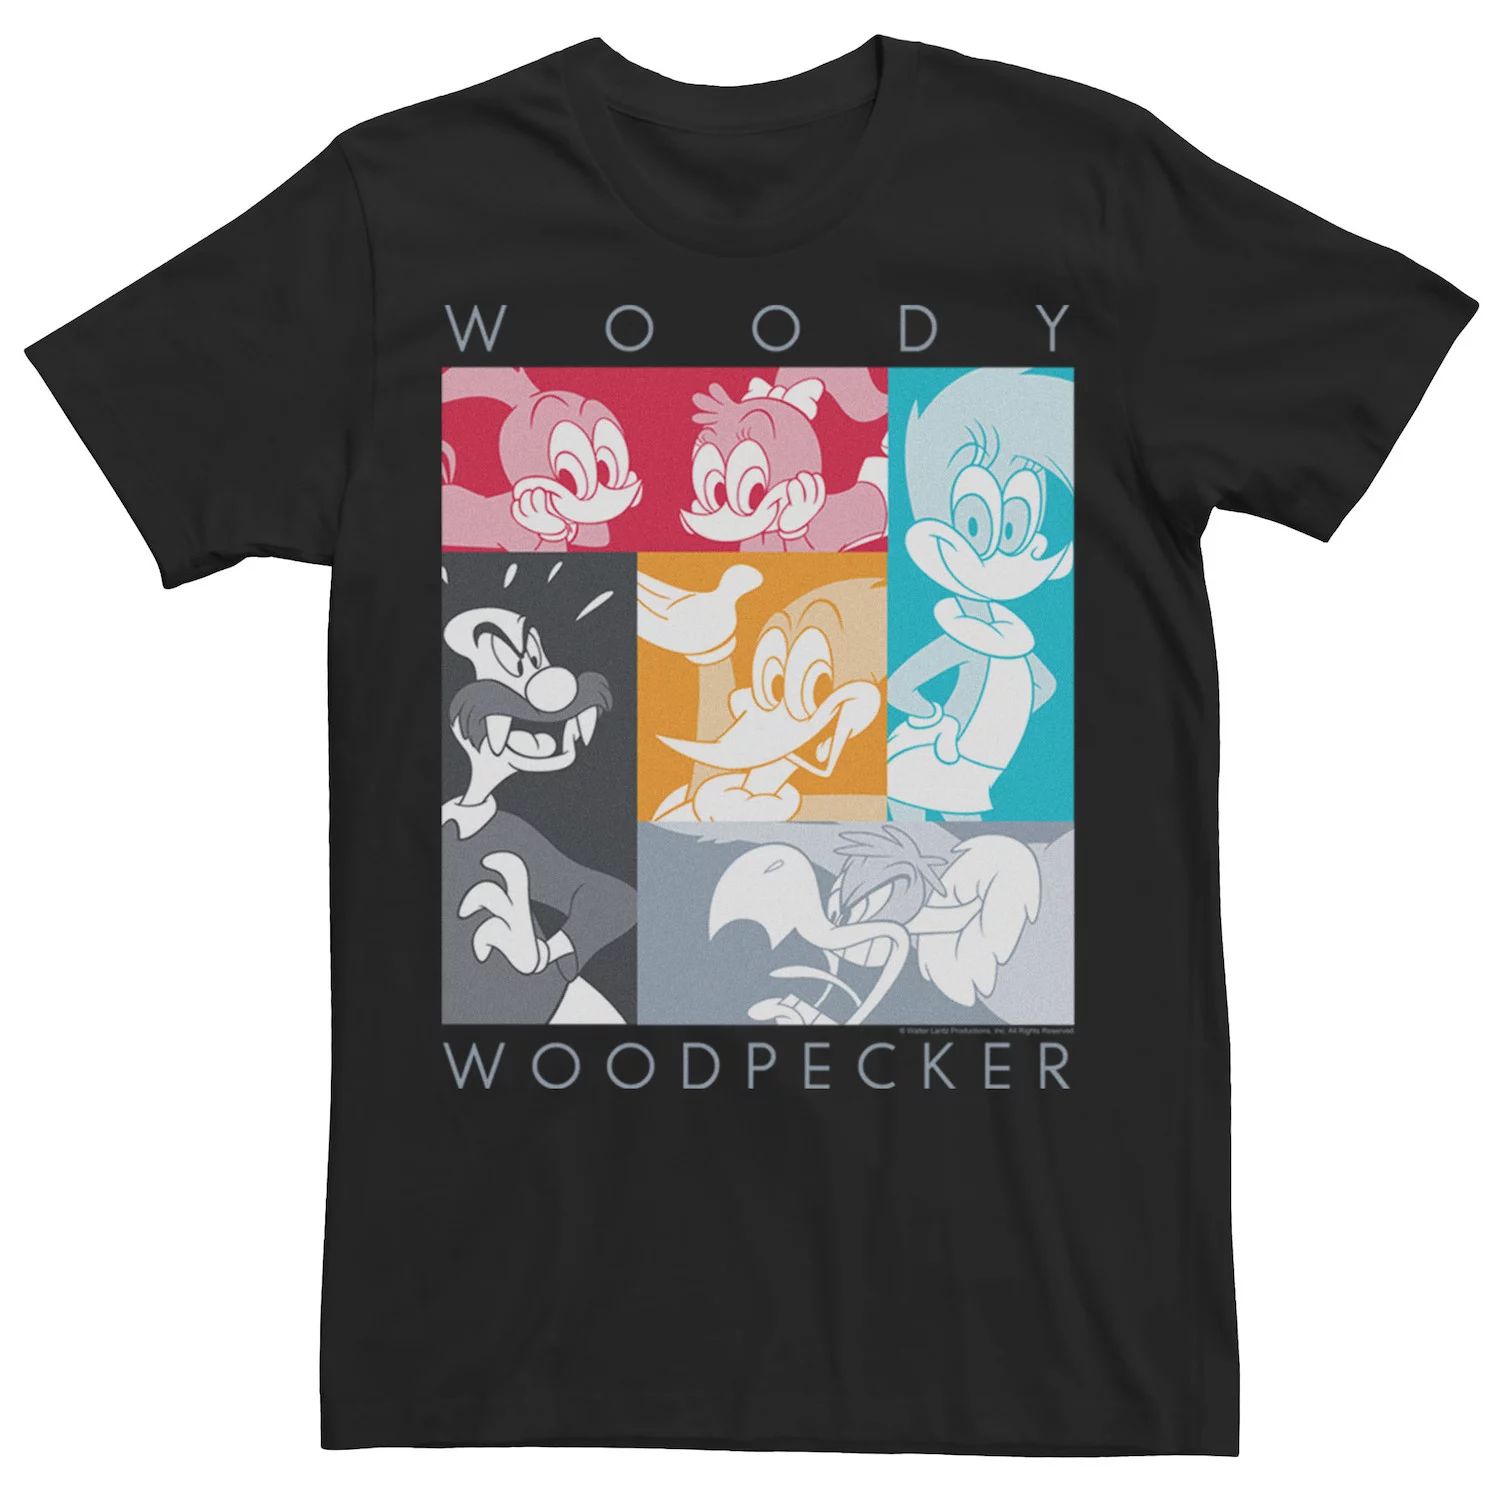 Мужская футболка с цветными вставками и коллажем Woody Woodpecker Licensed Character